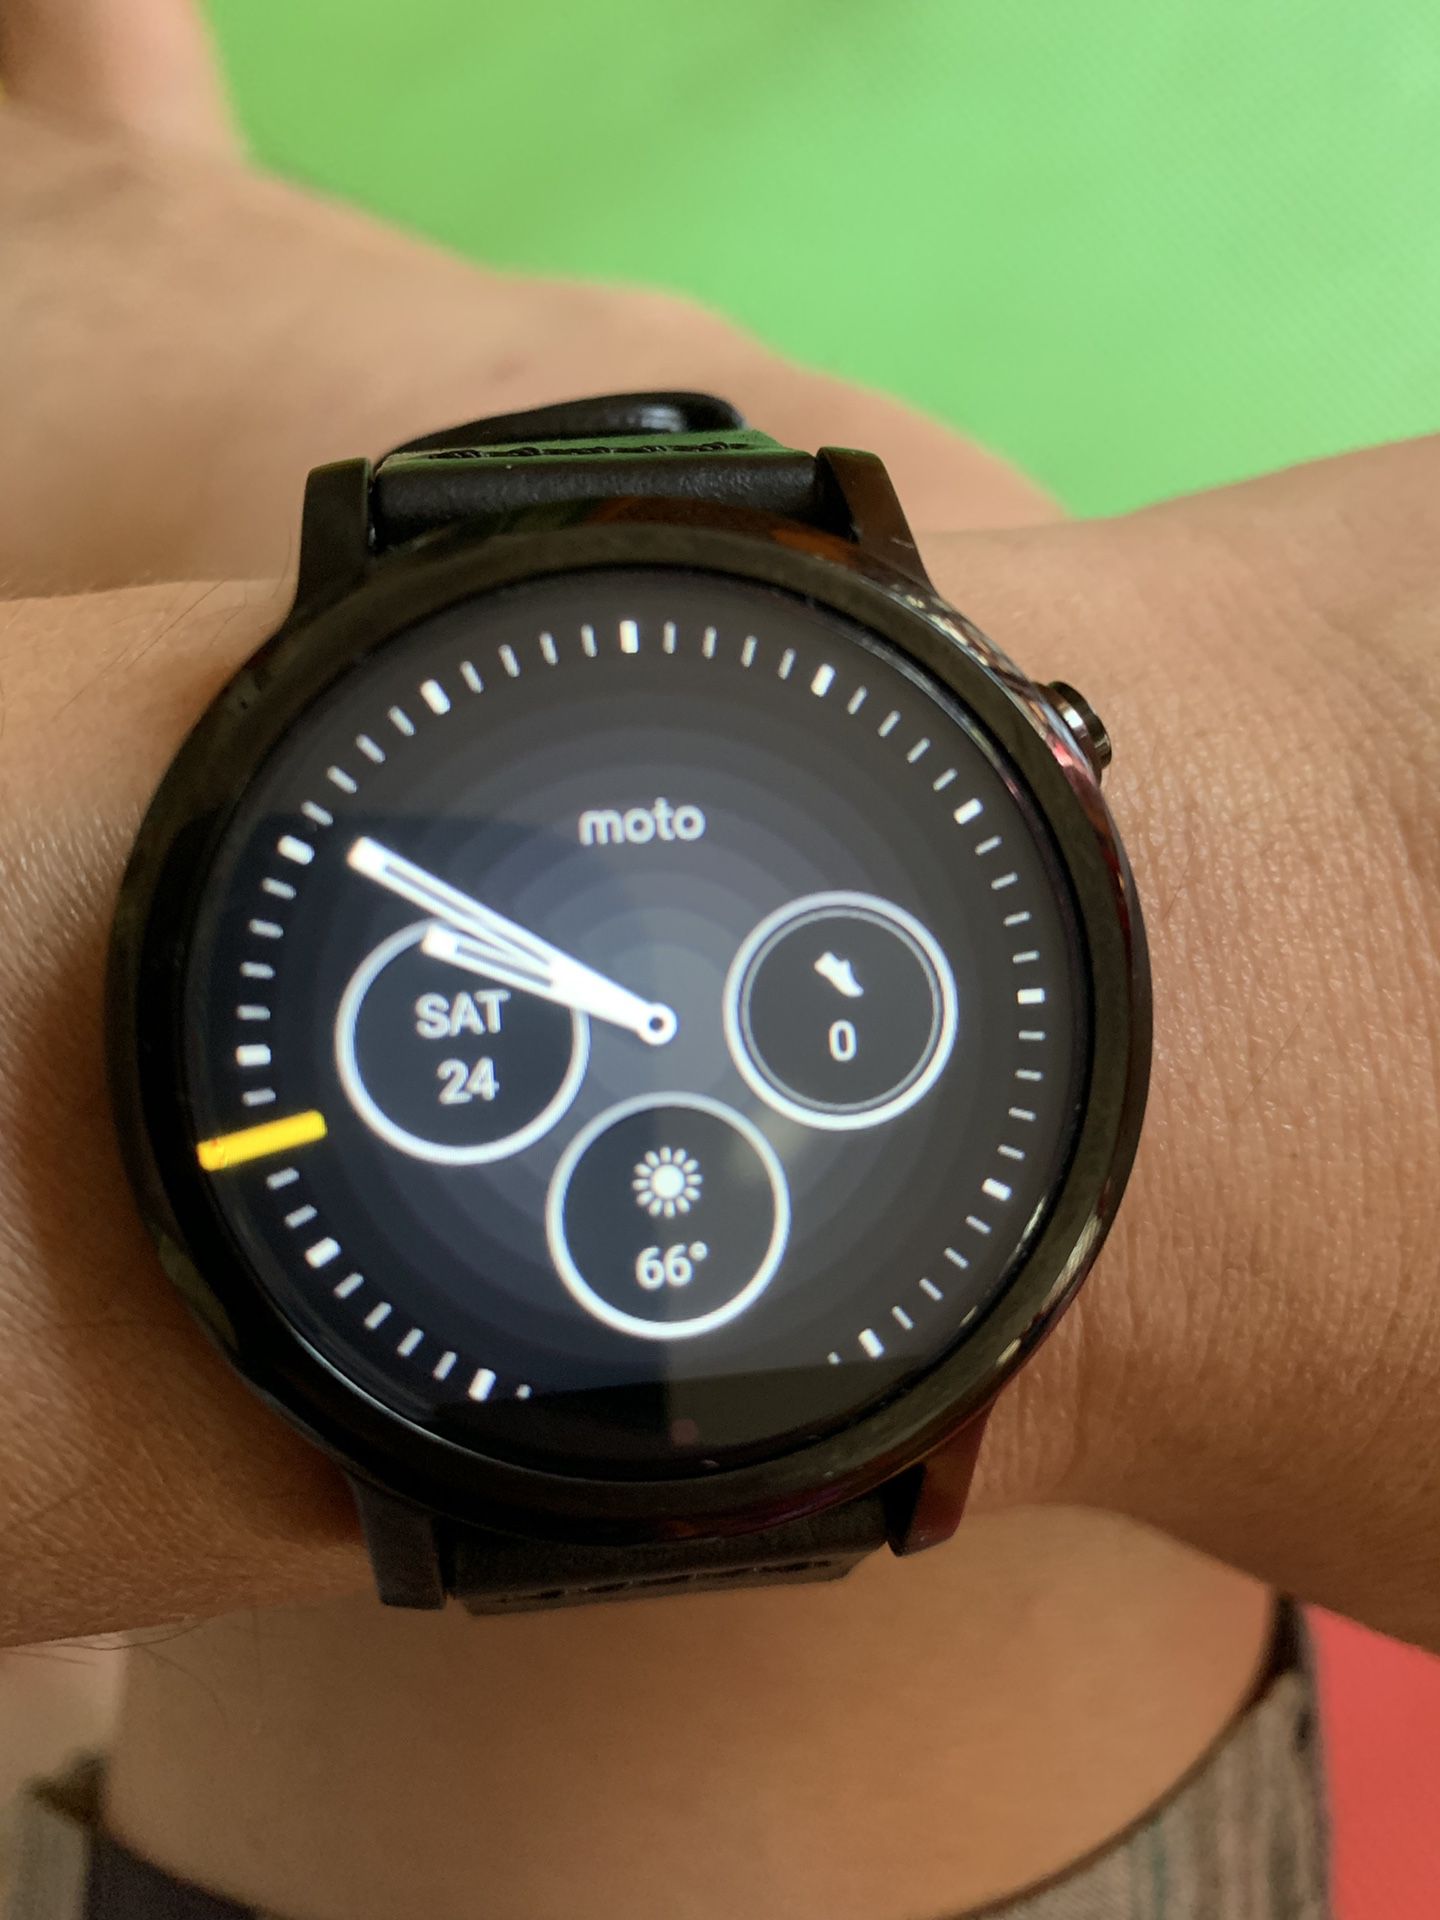 Moto 360 2nd gen Smart Watch